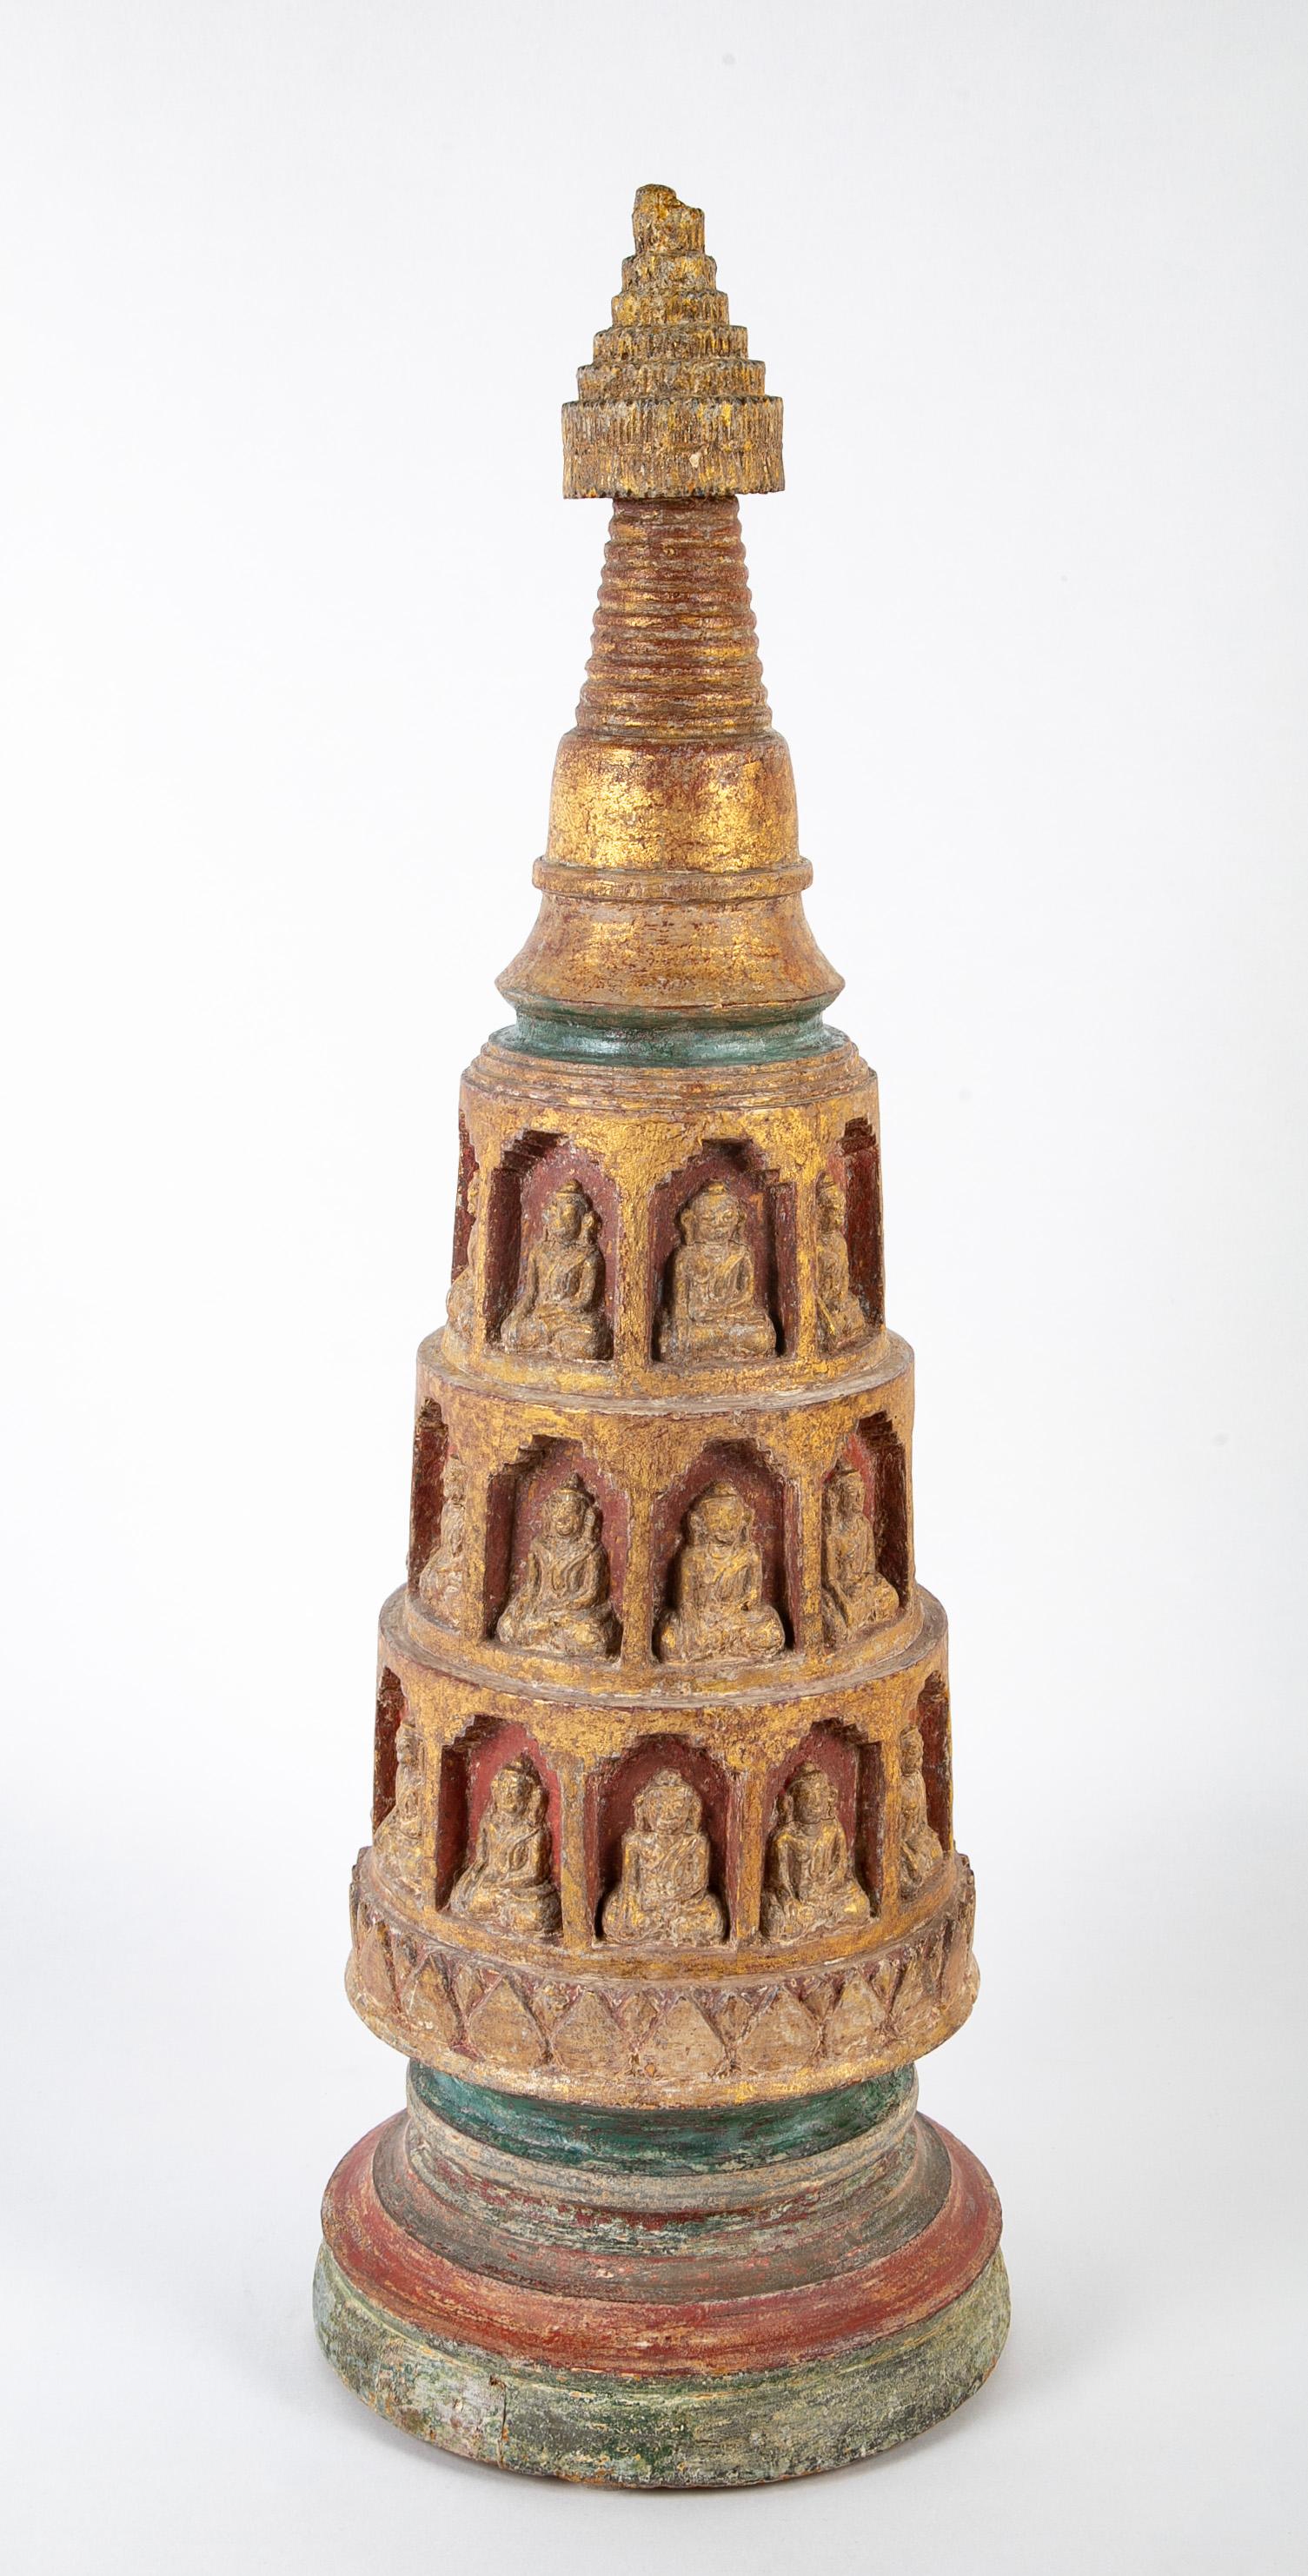 Stupa birman du XVIIIe siècle de la période Shan, merveilleusement sculpté, avec de nombreux Bouddha assis dans des niches. Avec dorure d'origine et polychromie rouge et verte. 
Le stupa est un monument architectural bouddhiste honorant un site